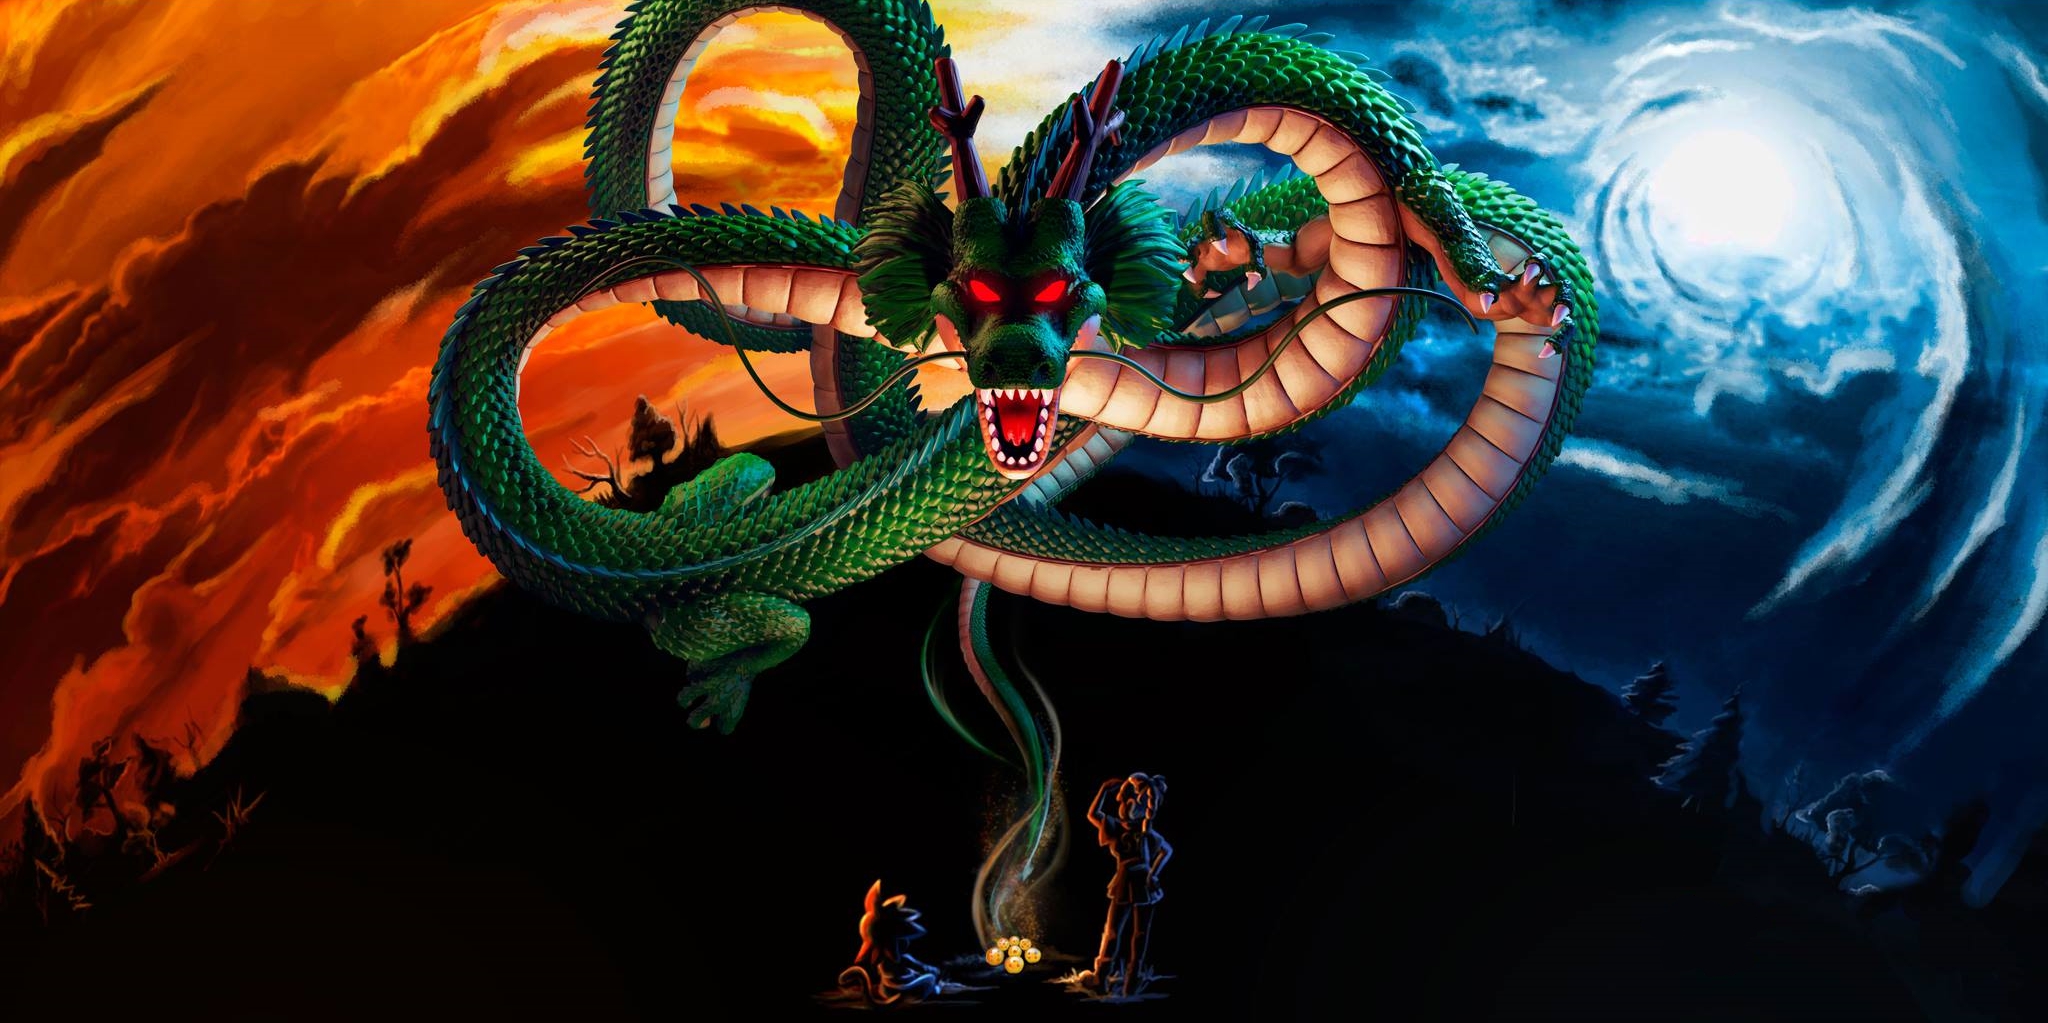 dragon ball super wallpaper,serpente,drago,personaggio fittizio,illustrazione,cg artwork